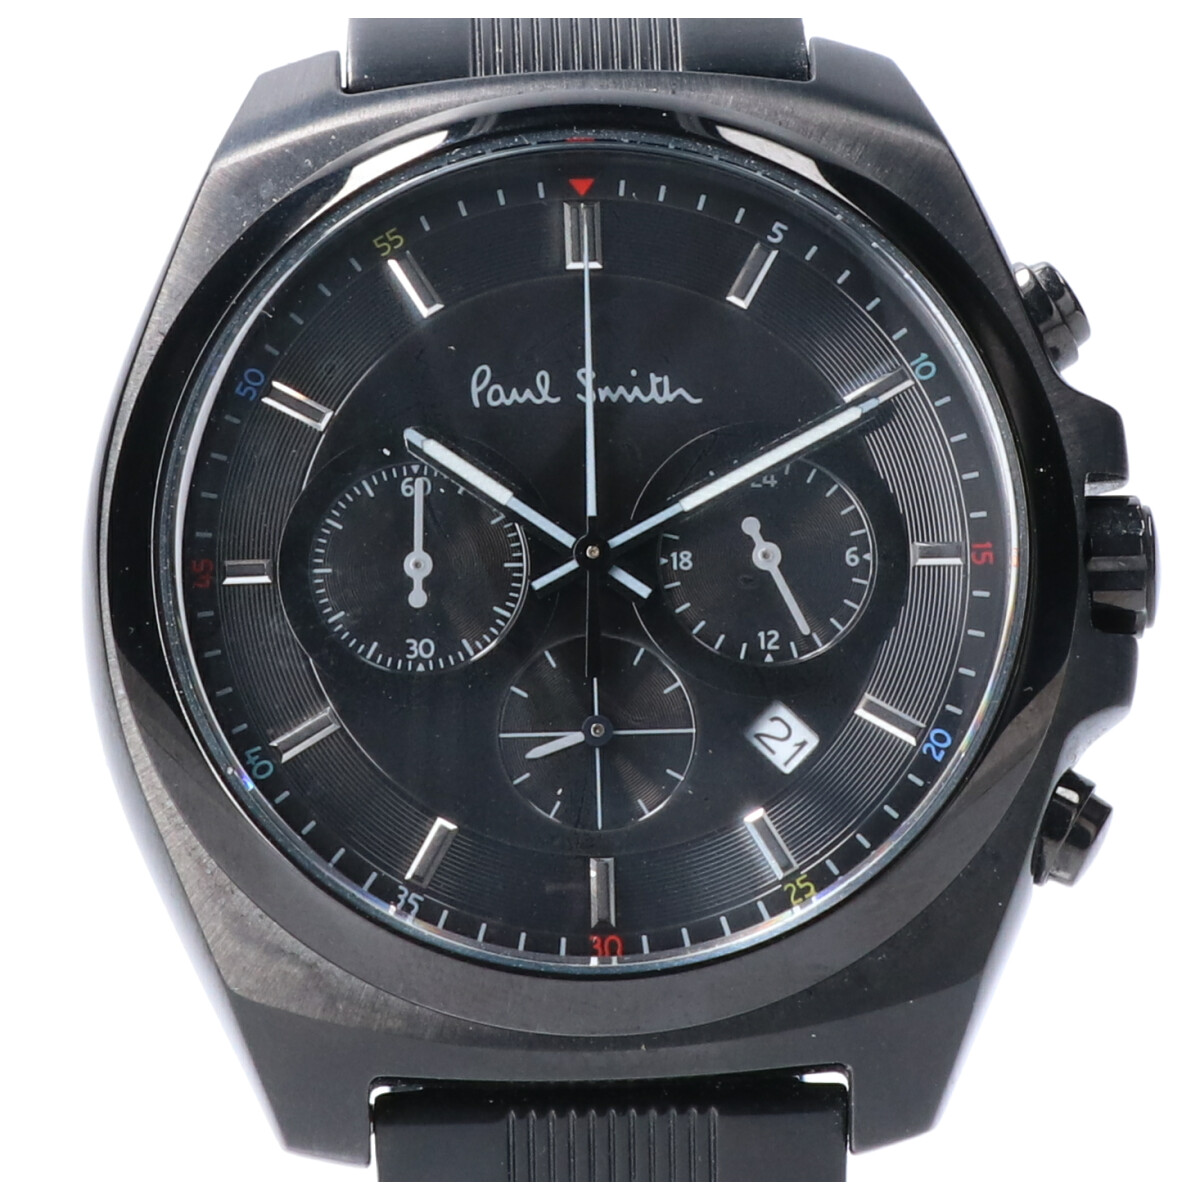 ポールスミスの0520-T021948 2016本限定 ファイナルアイズ クロノグラフ クオーツ 腕時計の買取実績です。